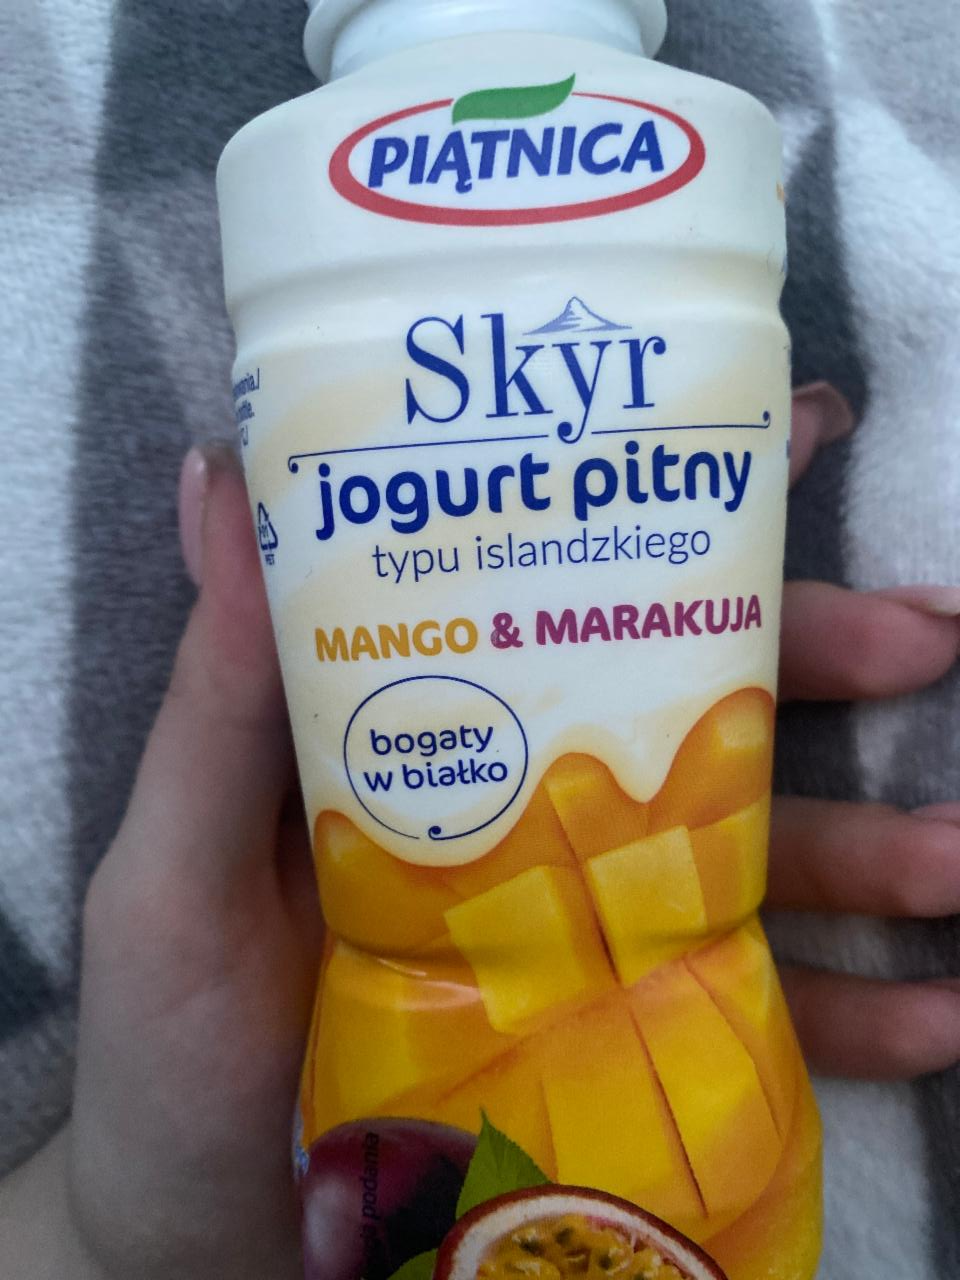 Фото - скир питьевой йогурт манго-маракуйя Piątnica